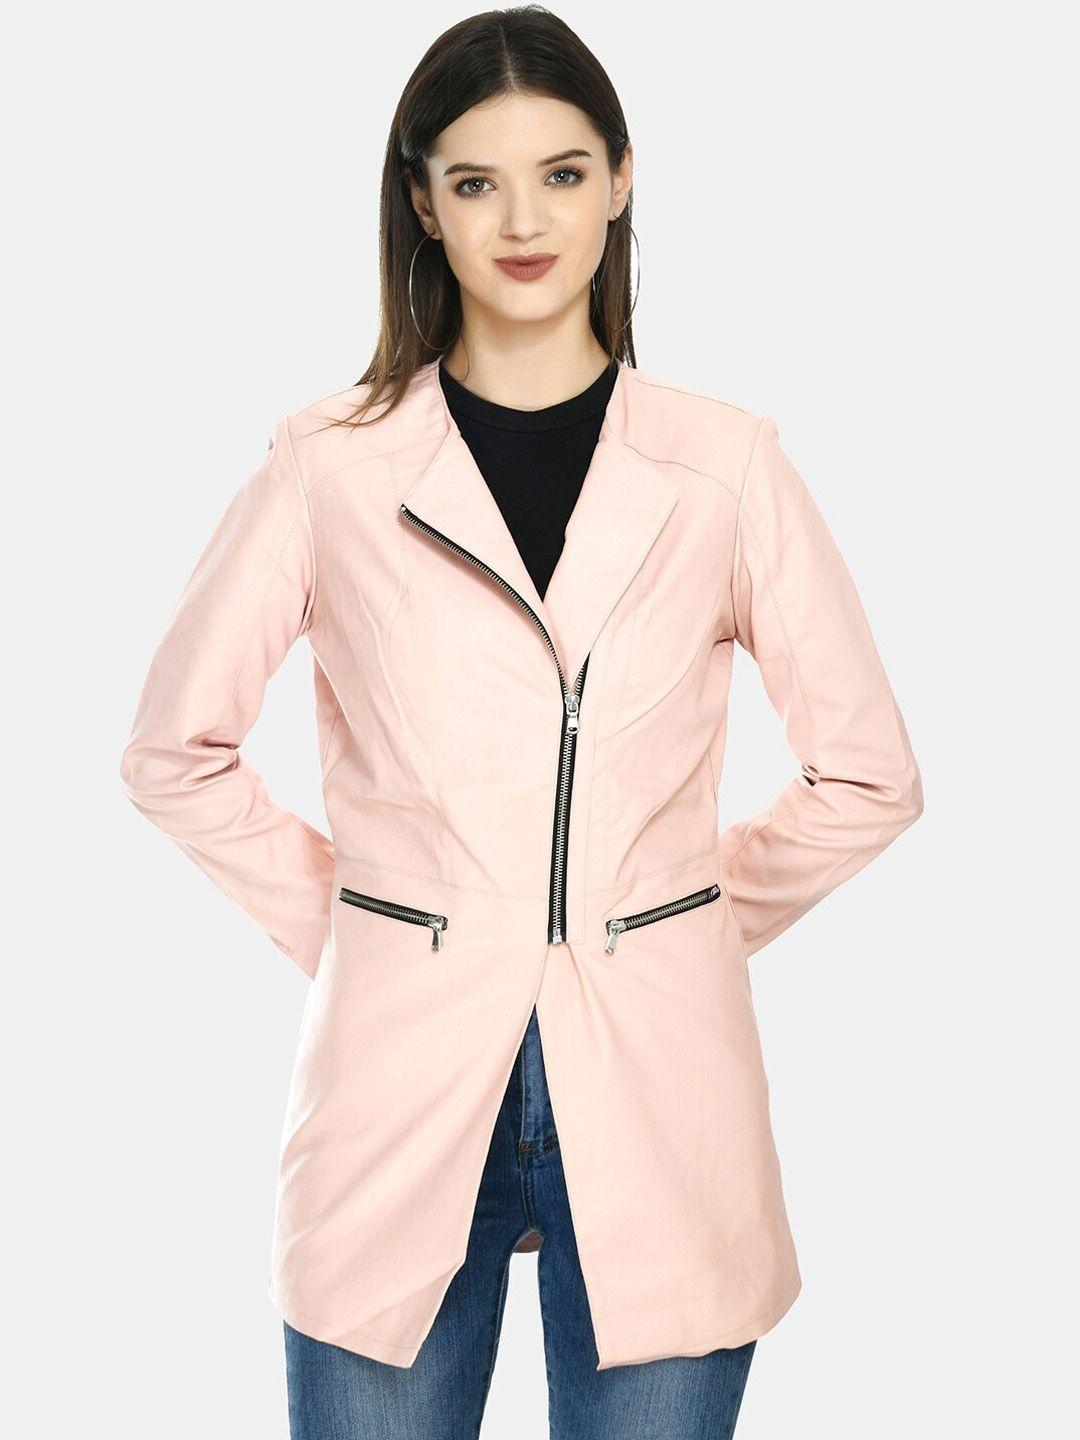 tboj women pink geometric leather lightweight longline open front jacket